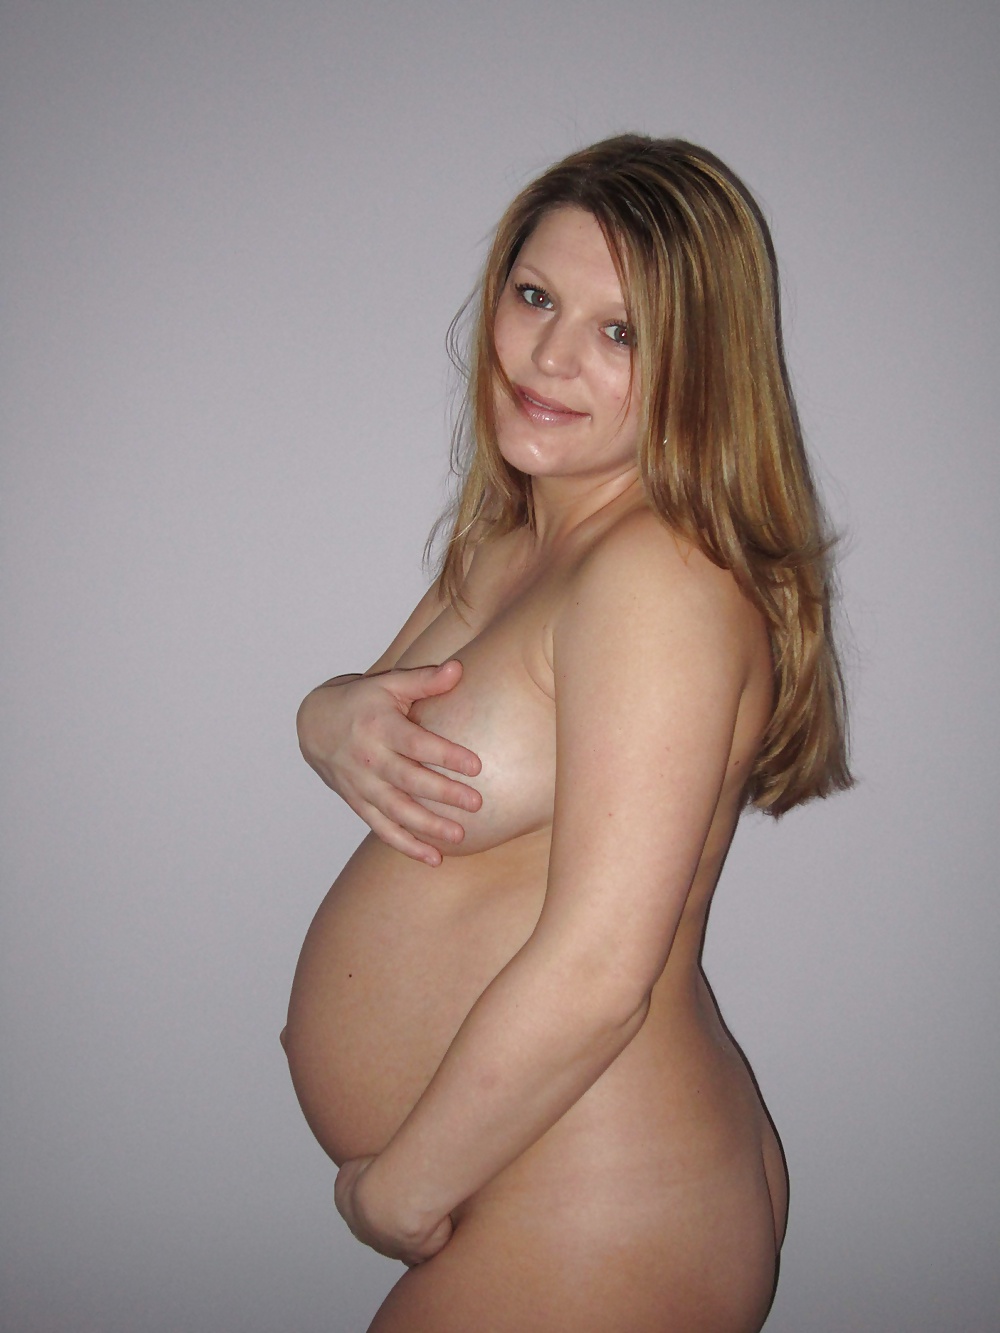 妊娠しているだけの素人の写真集
 #26347993